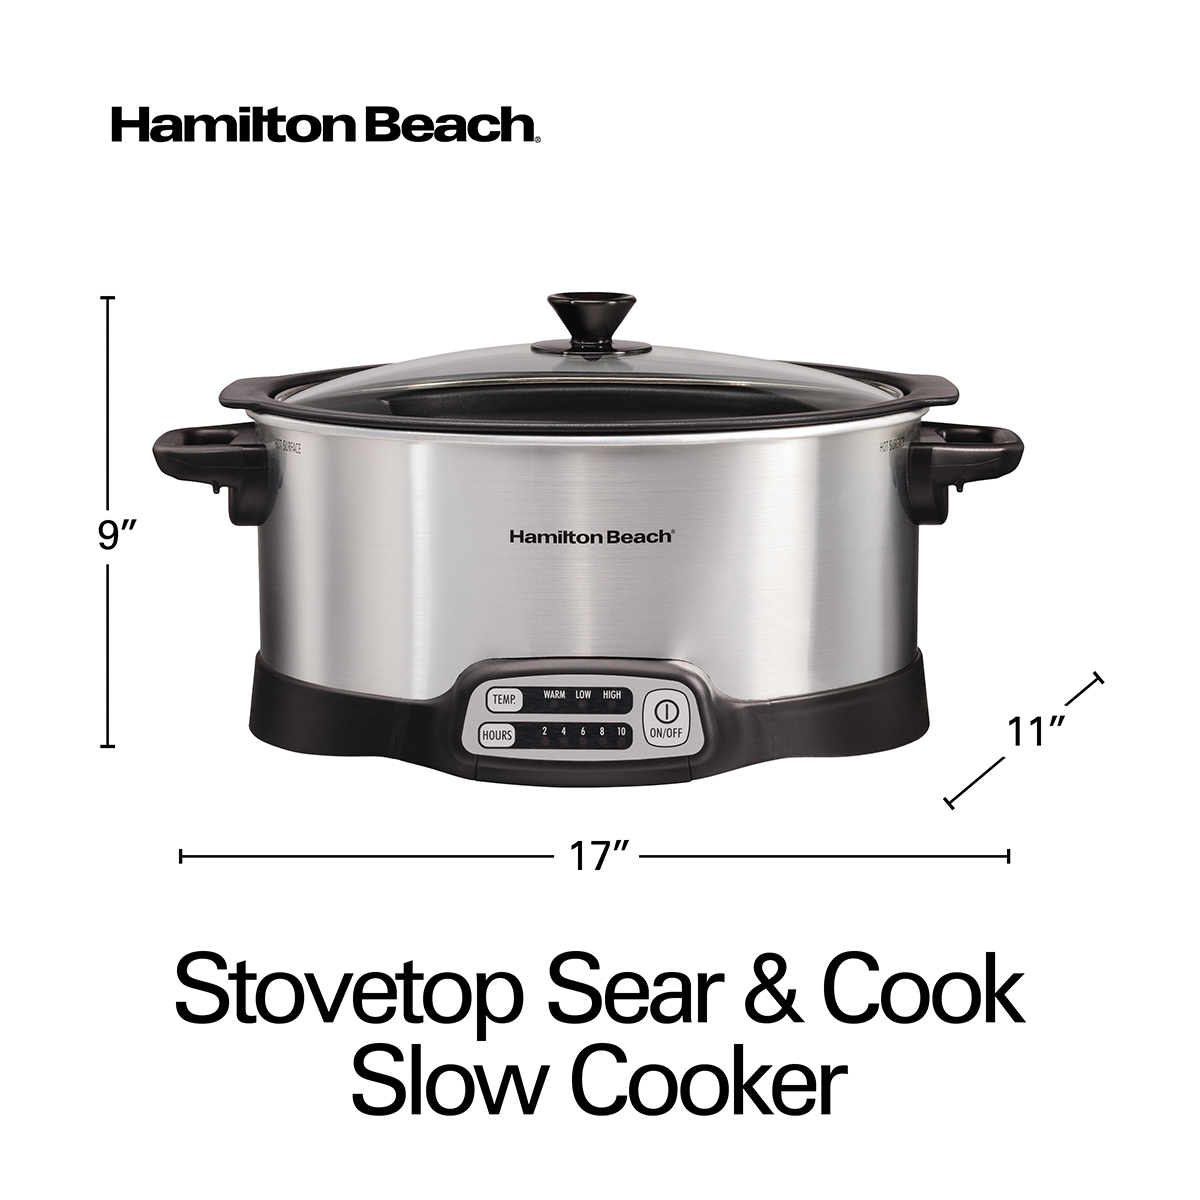 Hamilton Beach Stovetop Sear & Cook Slow Cooker - 33662